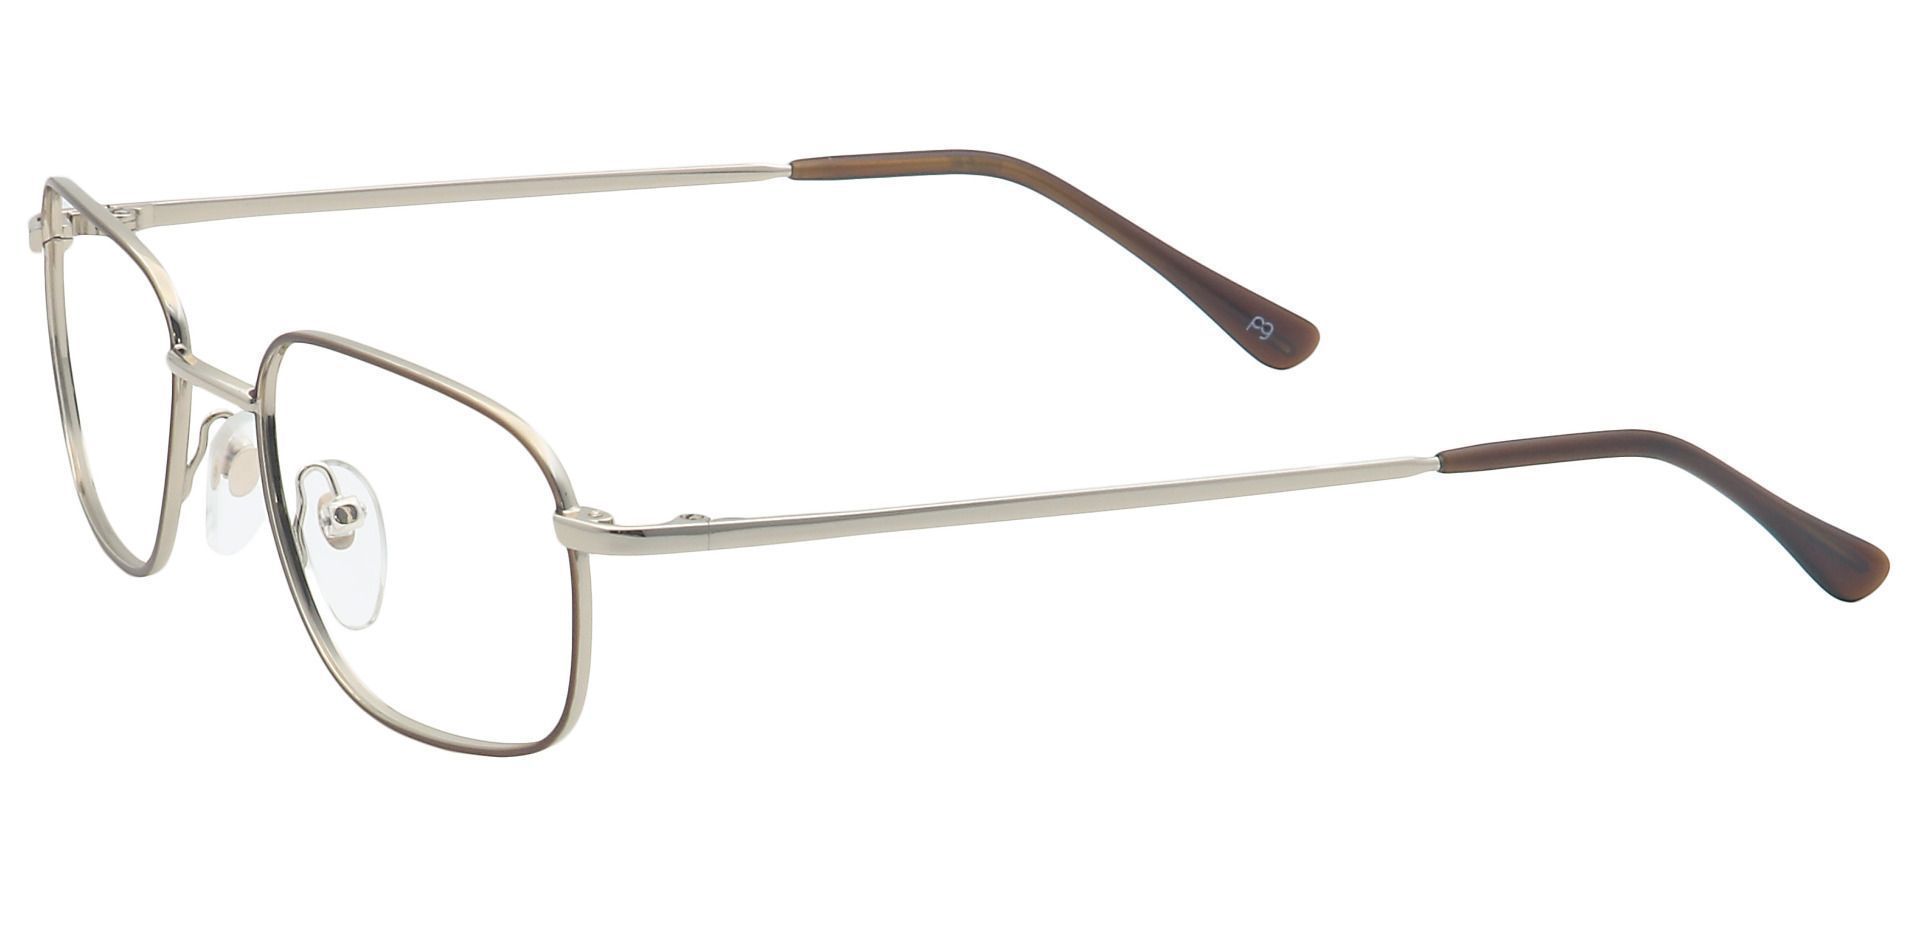 Scott Rectangle Eyeglasses Frame - Yellow